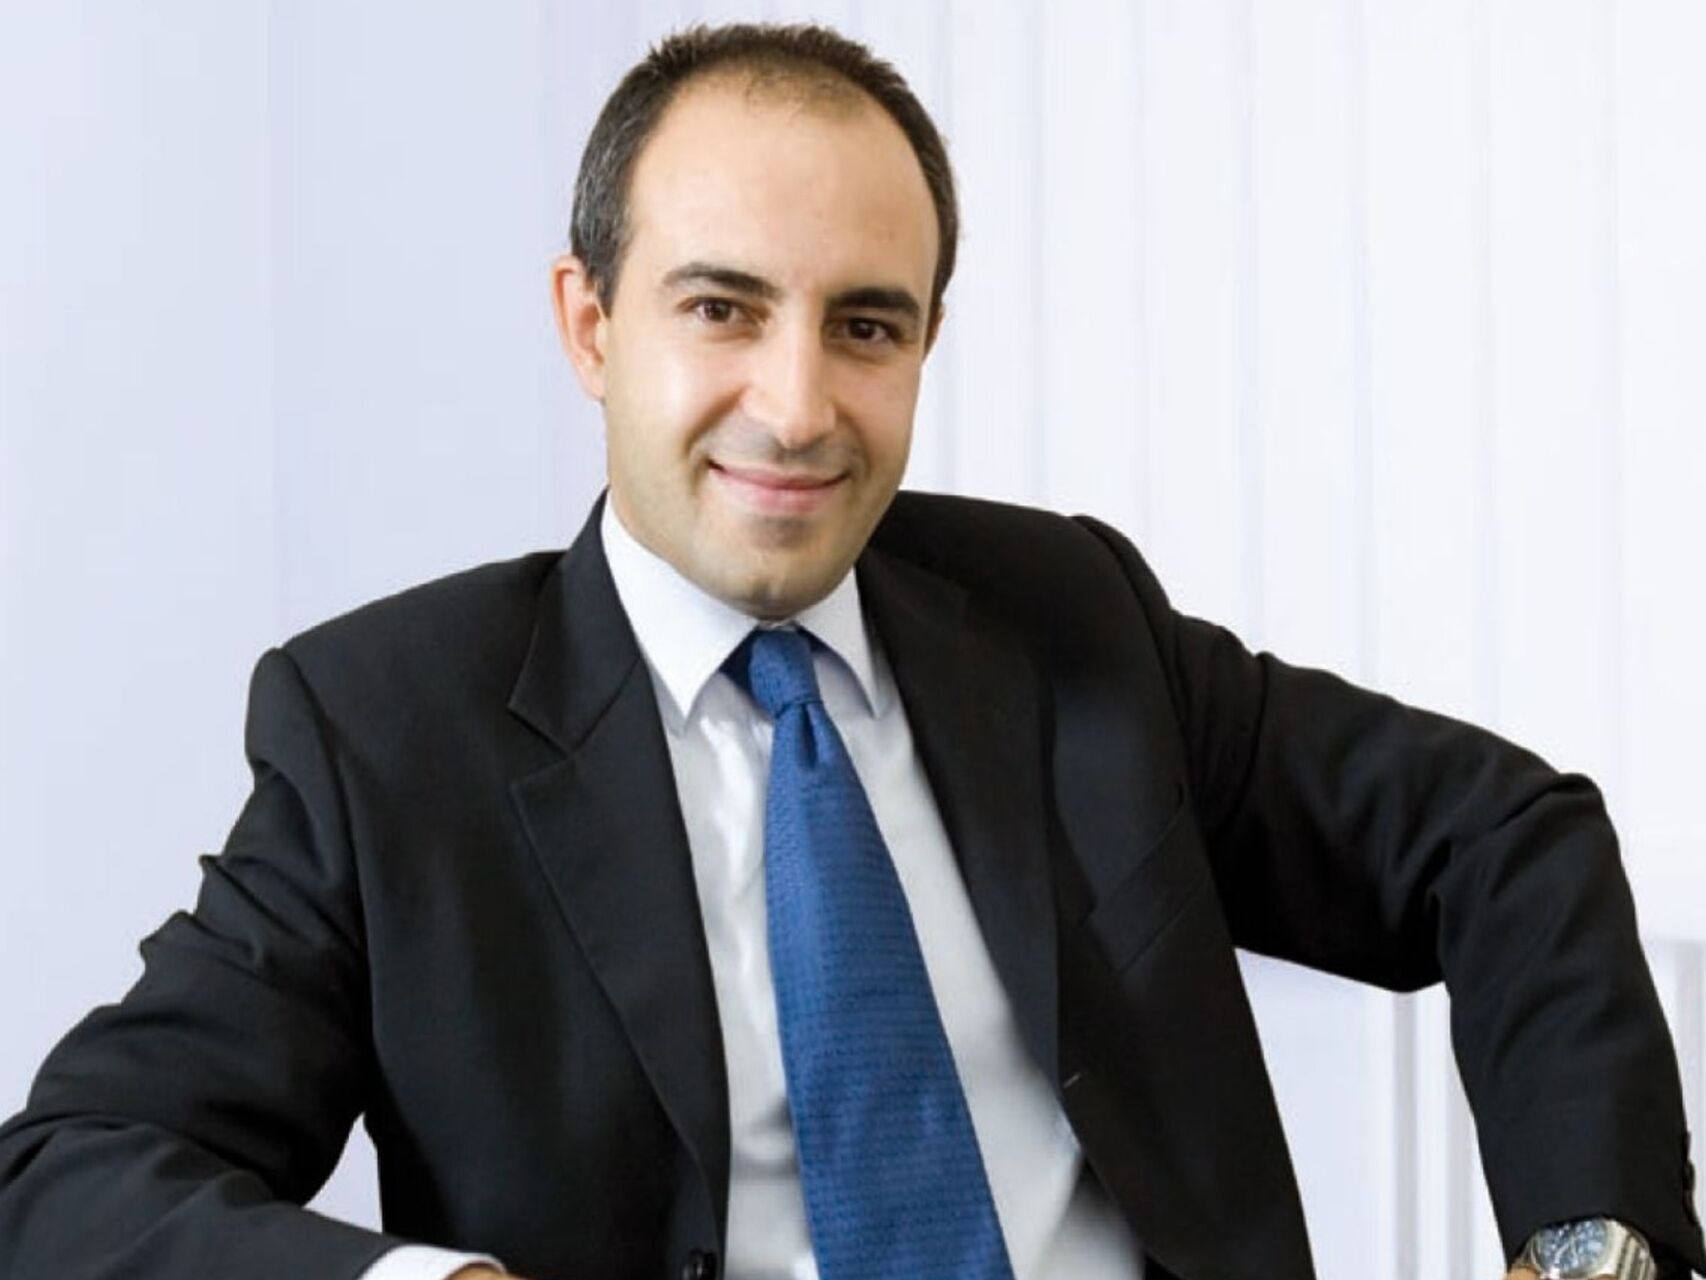 Fabio Pagano je izvršni direktor tvrtke SitoVivo